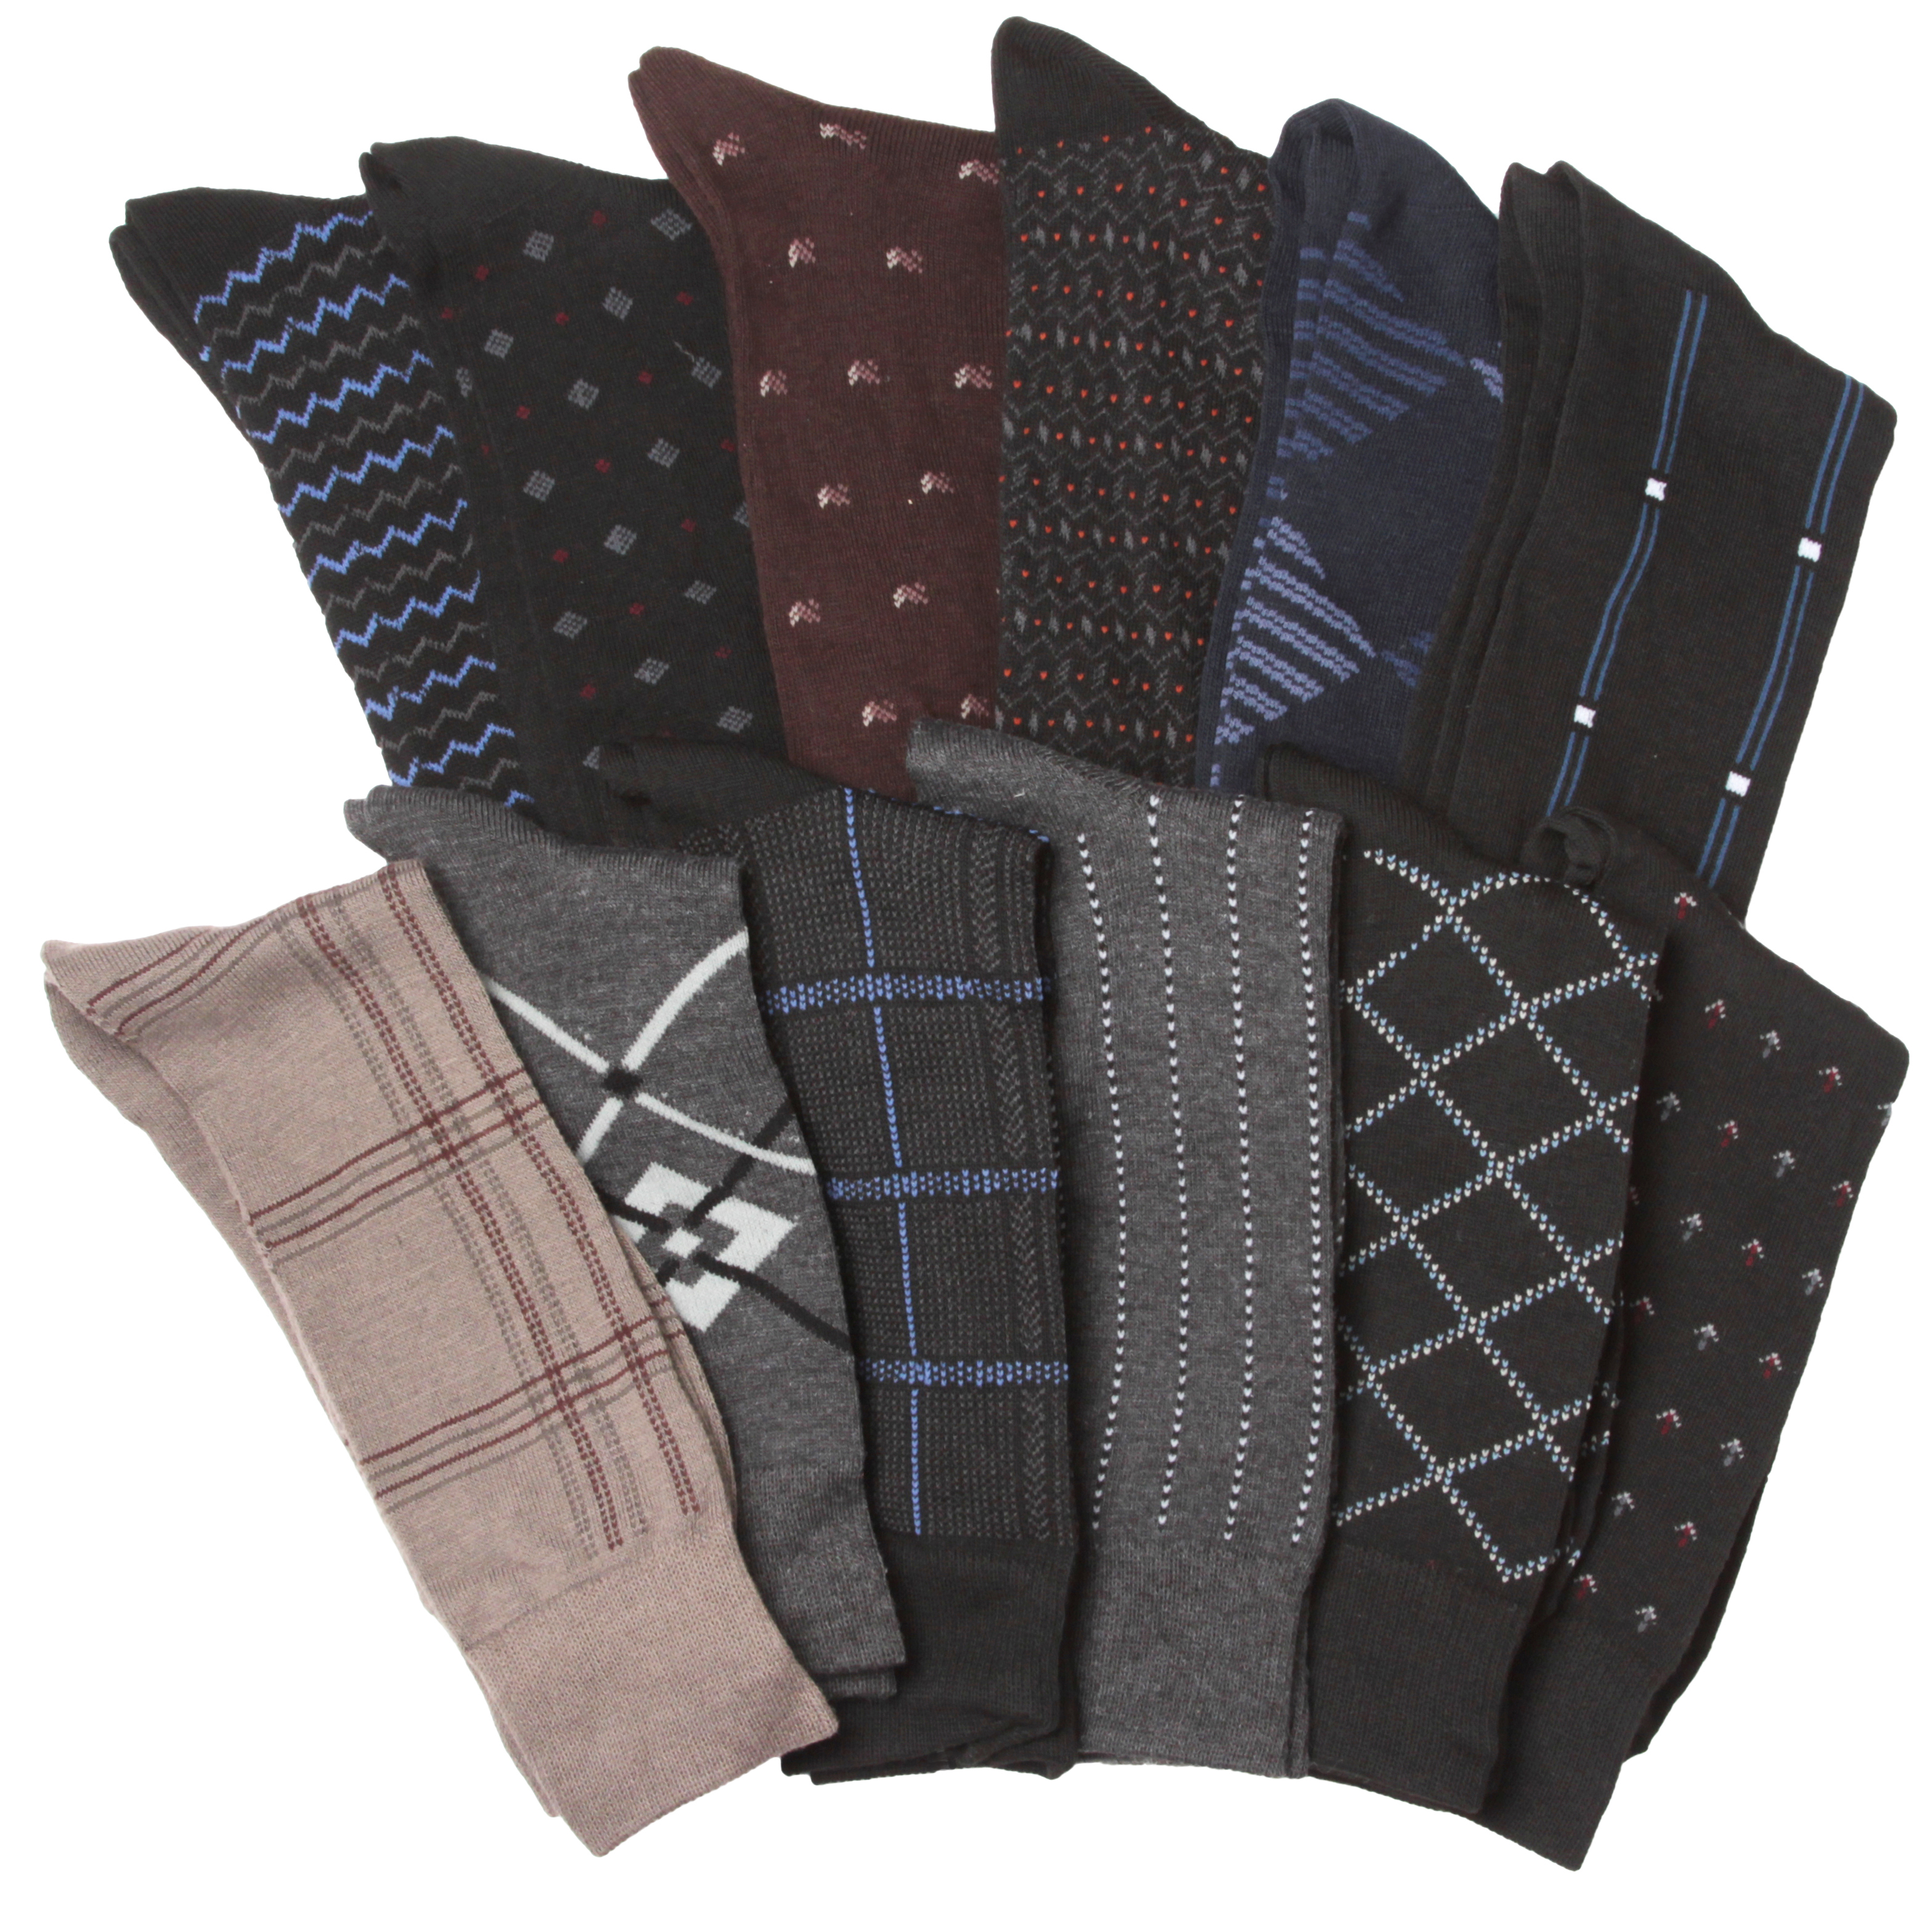 Men's Designer DRESS Socks - Assorted Prints - Size 10-13 - 3-Pair Packs